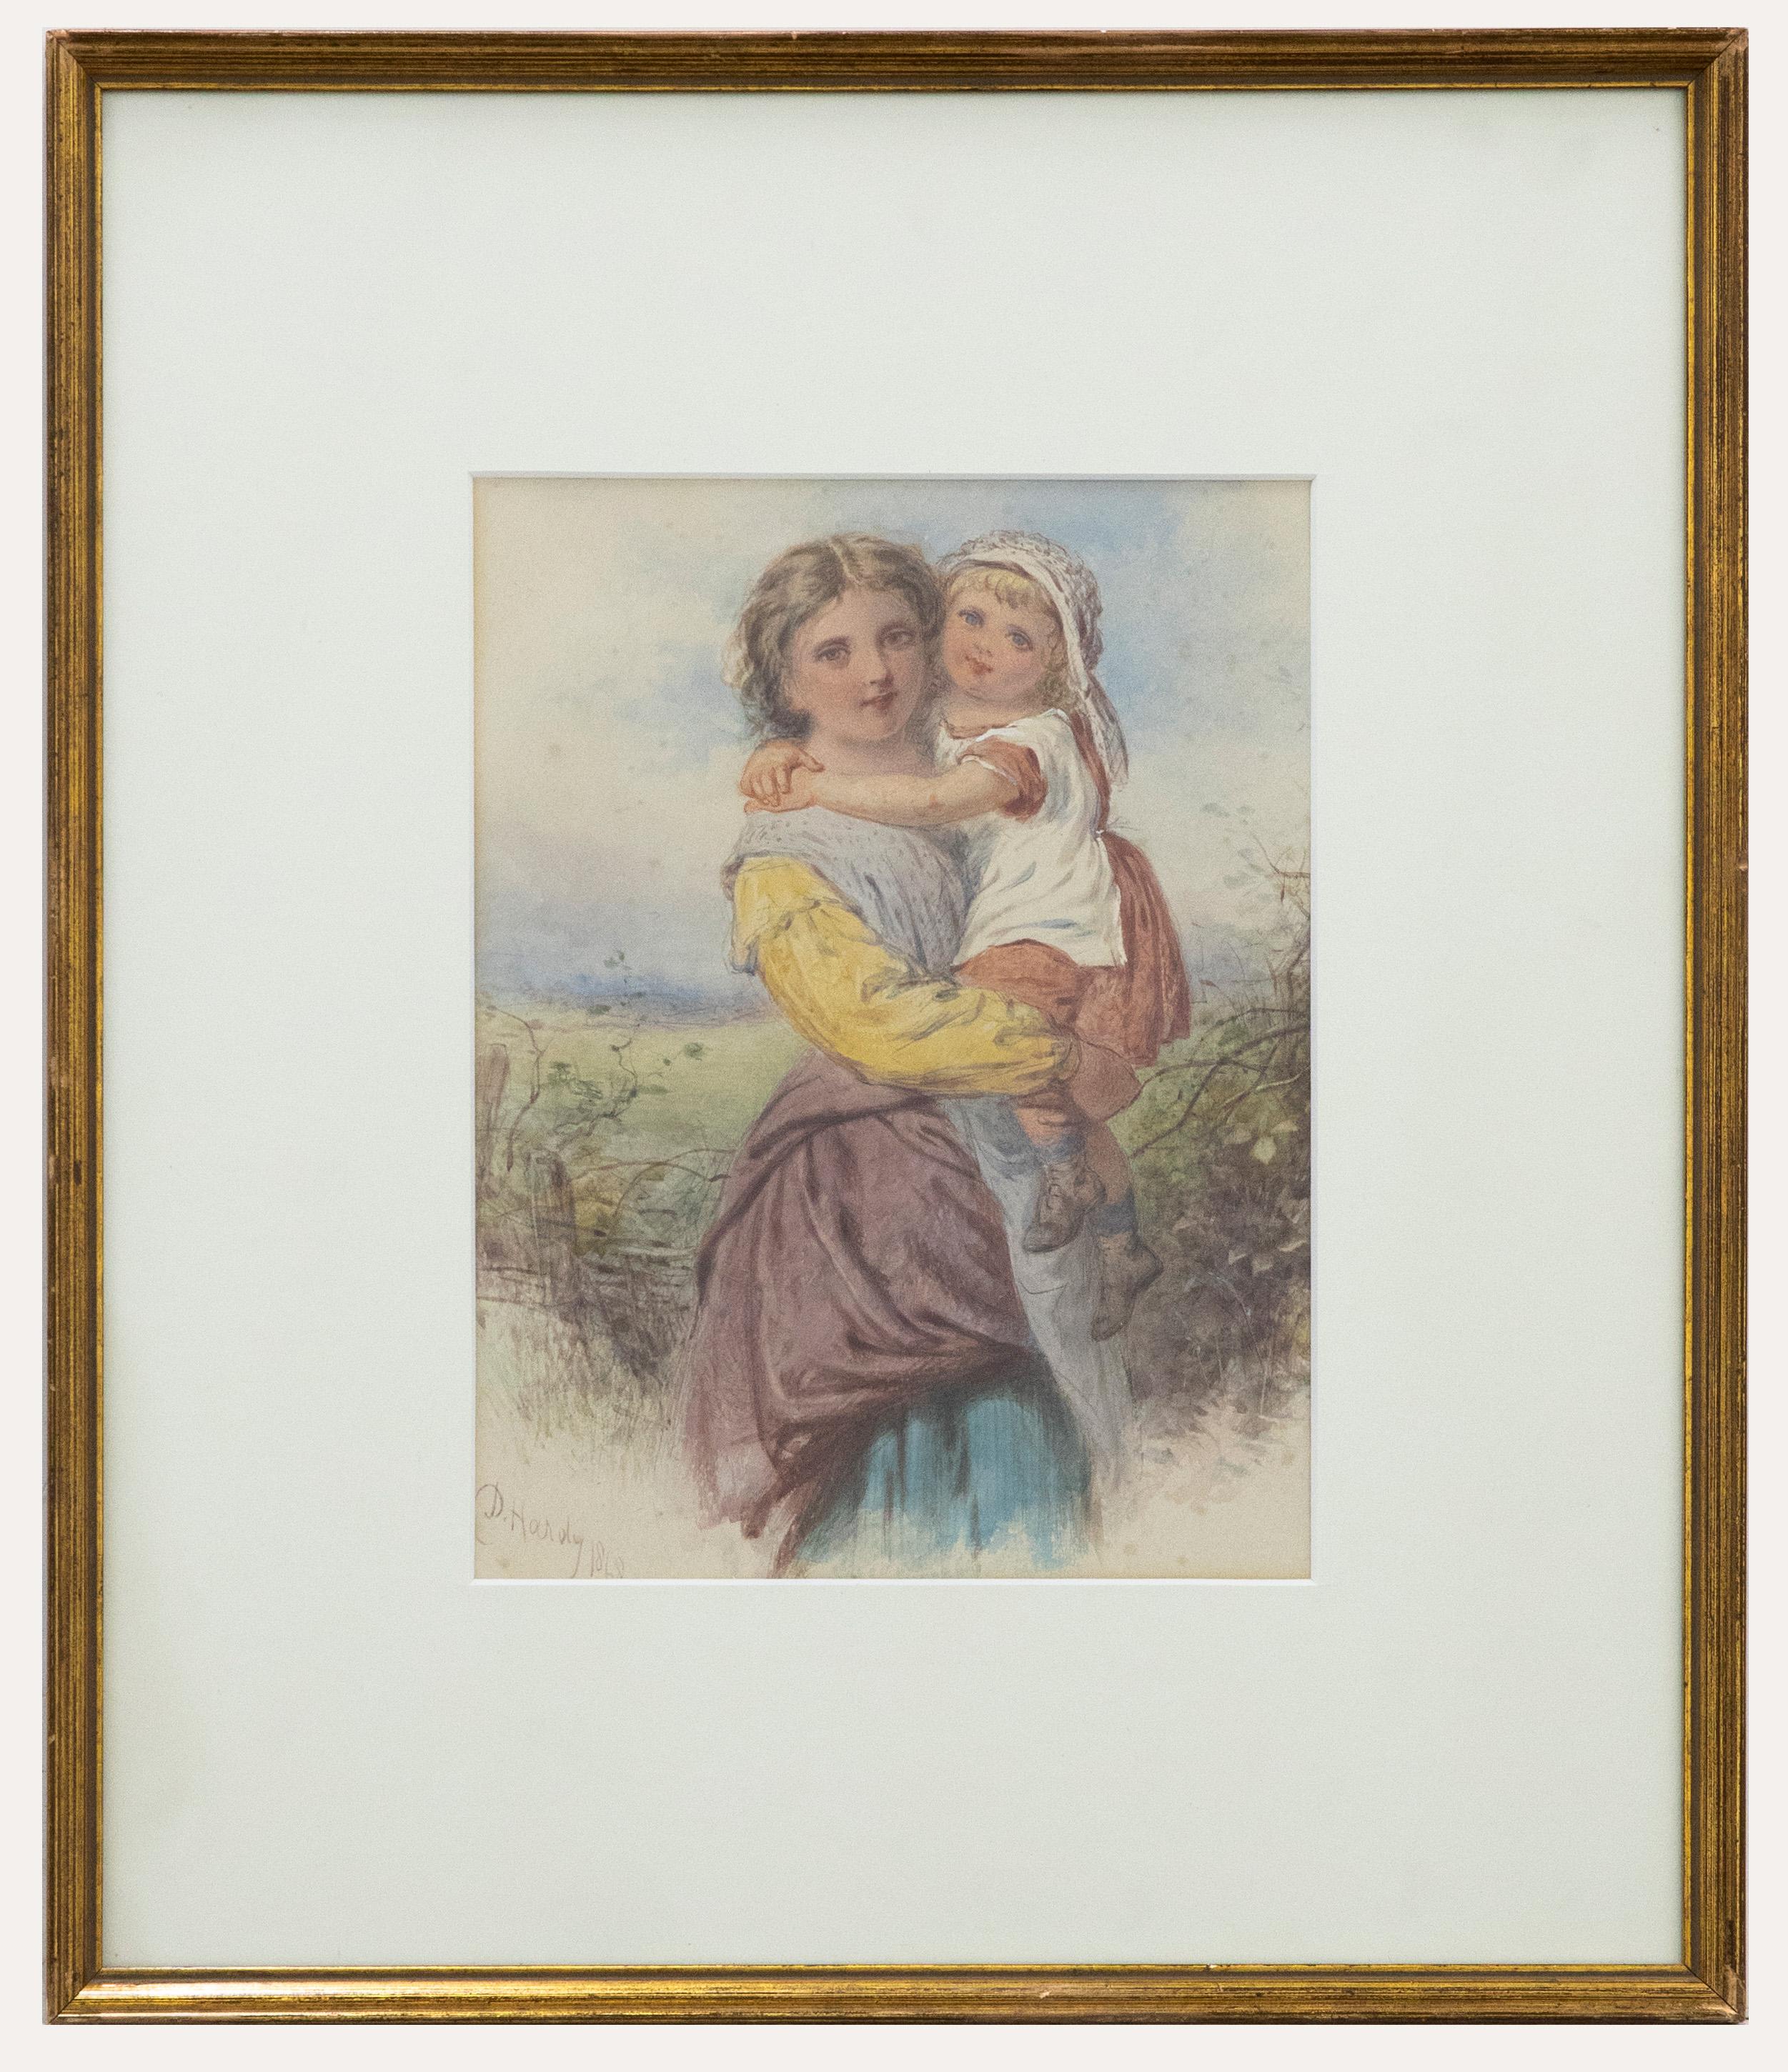 Ein charmantes Aquarell aus dem 19. Jahrhundert, das eine ältere Schwester zeigt, die ihre jüngere Schwester in den Armen hält, während sich die beiden mit einem sanften Lächeln umarmen. Der Künstler hat in der linken unteren Ecke signiert und